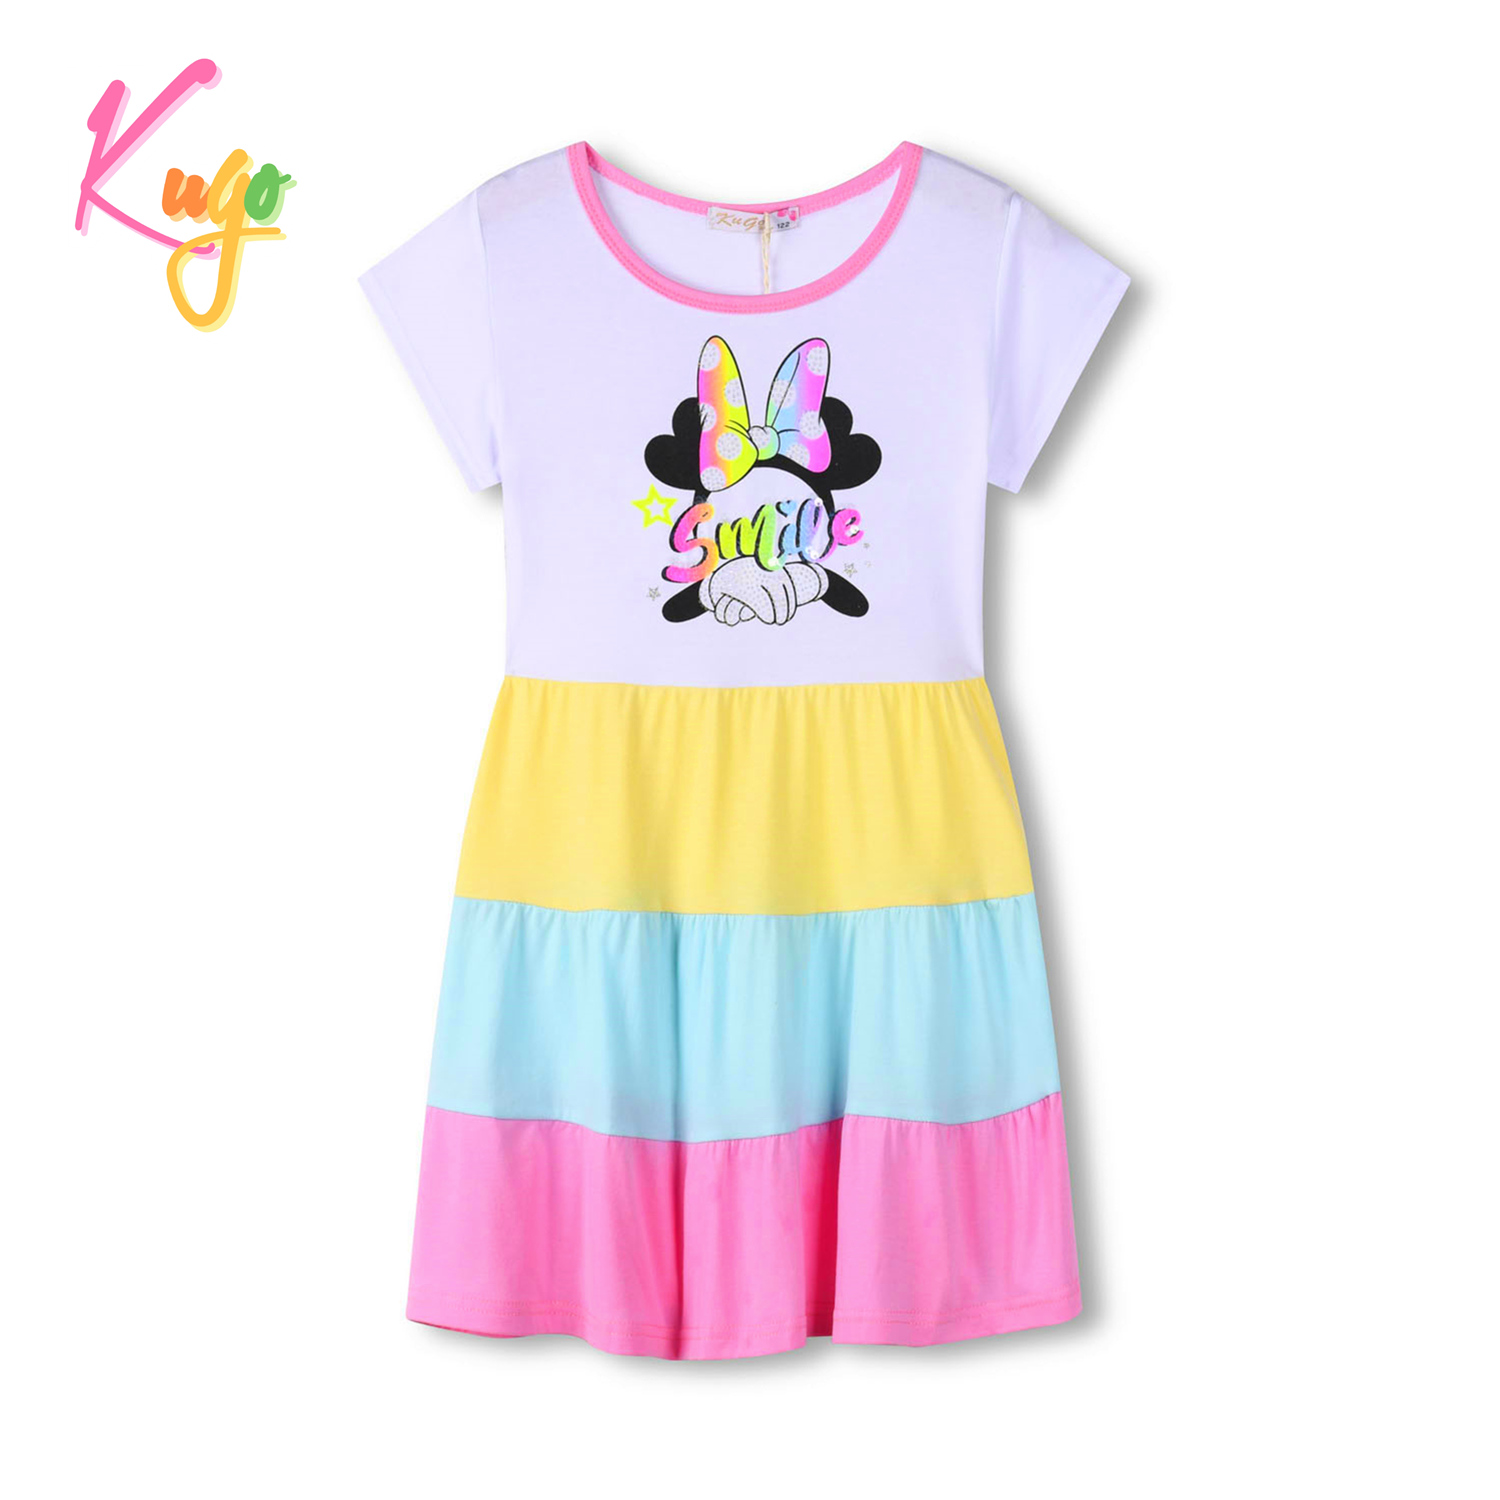 Dívčí šaty - KUGO MS1721, růžová Barva: Růžová, Velikost: 128